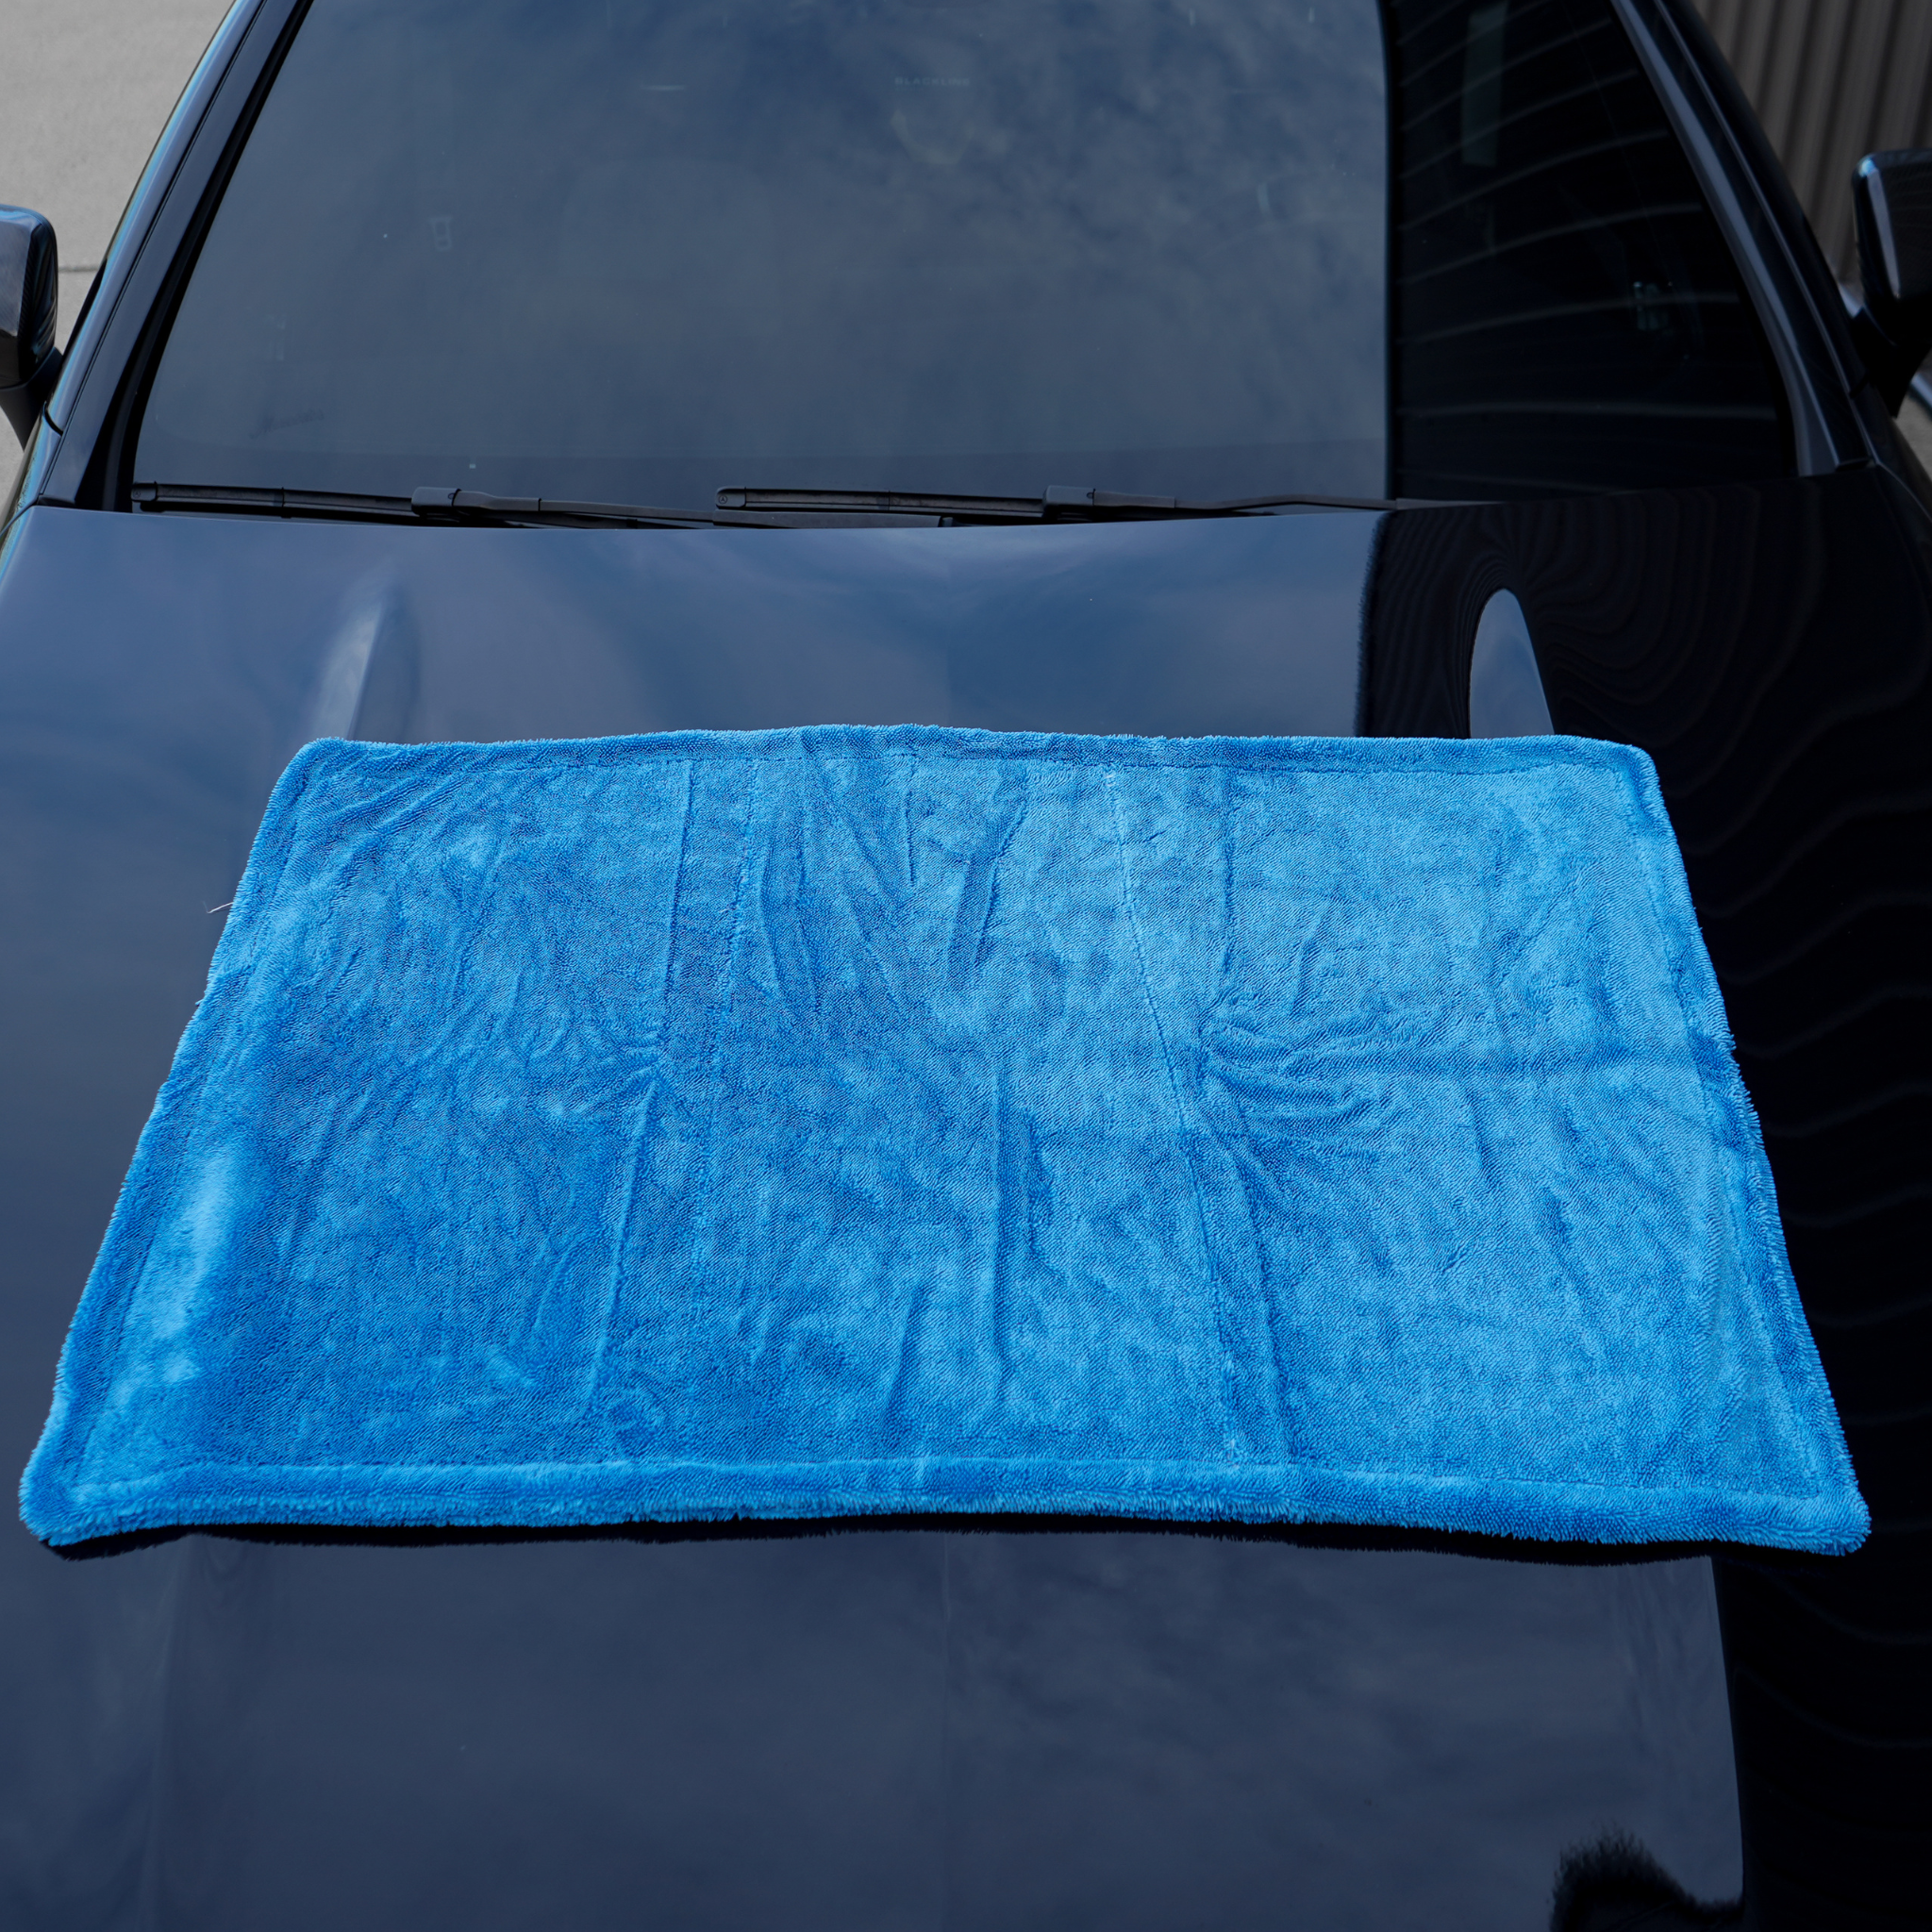 FULL CASE, Microfiber Car Drying Towel